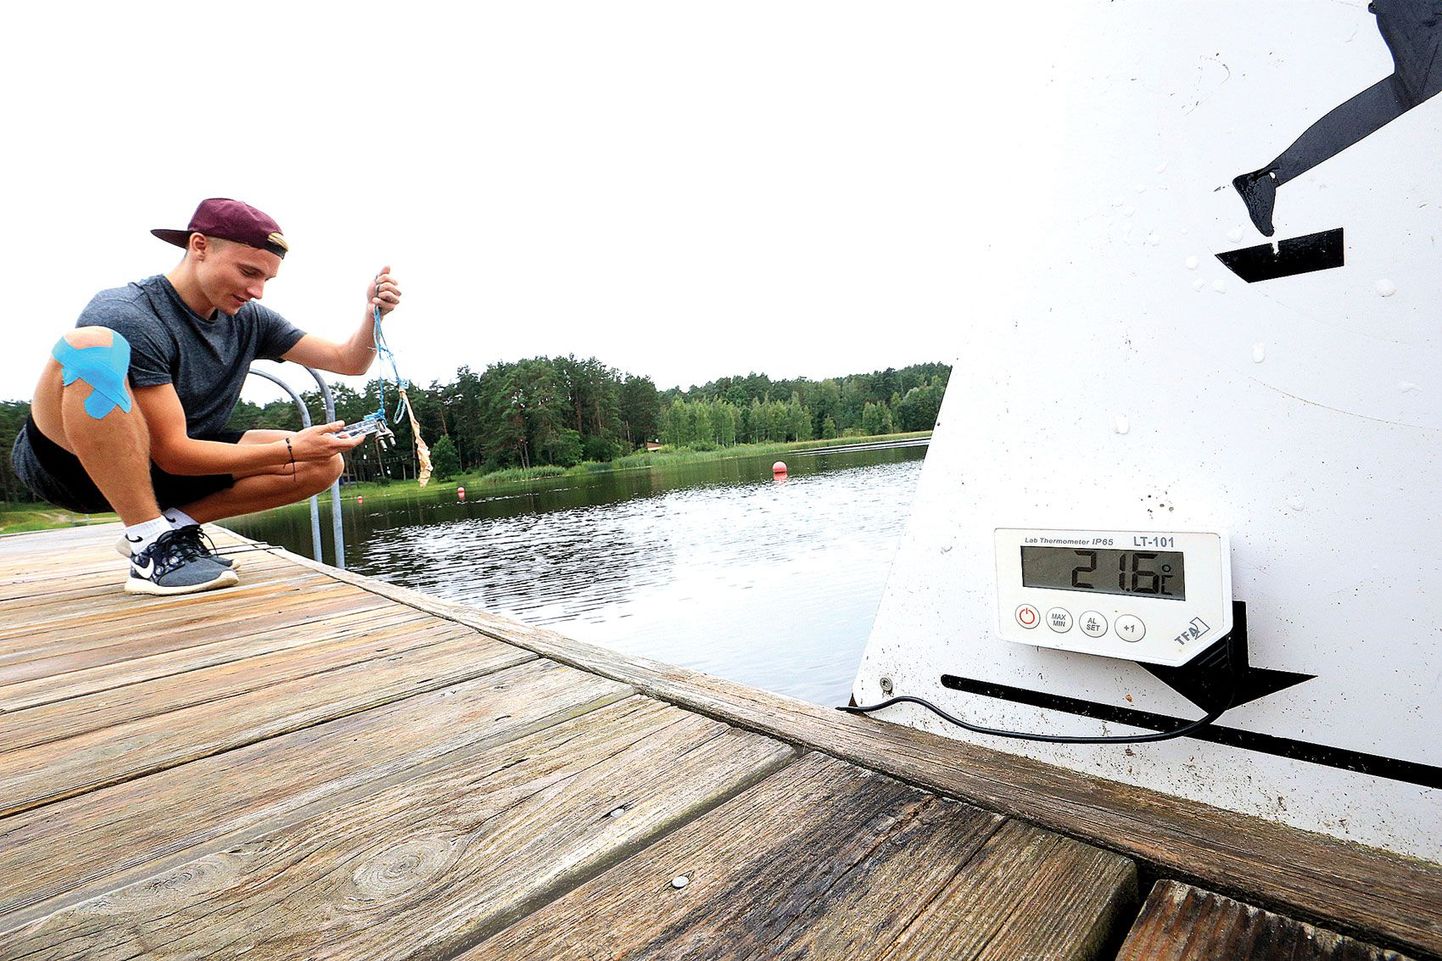 На берегу озера Вереви спасатель Рене Пранс своим термометром замерил температуру воды и получил 25 градусов, редакционный термометр показал 21,6 градуса.